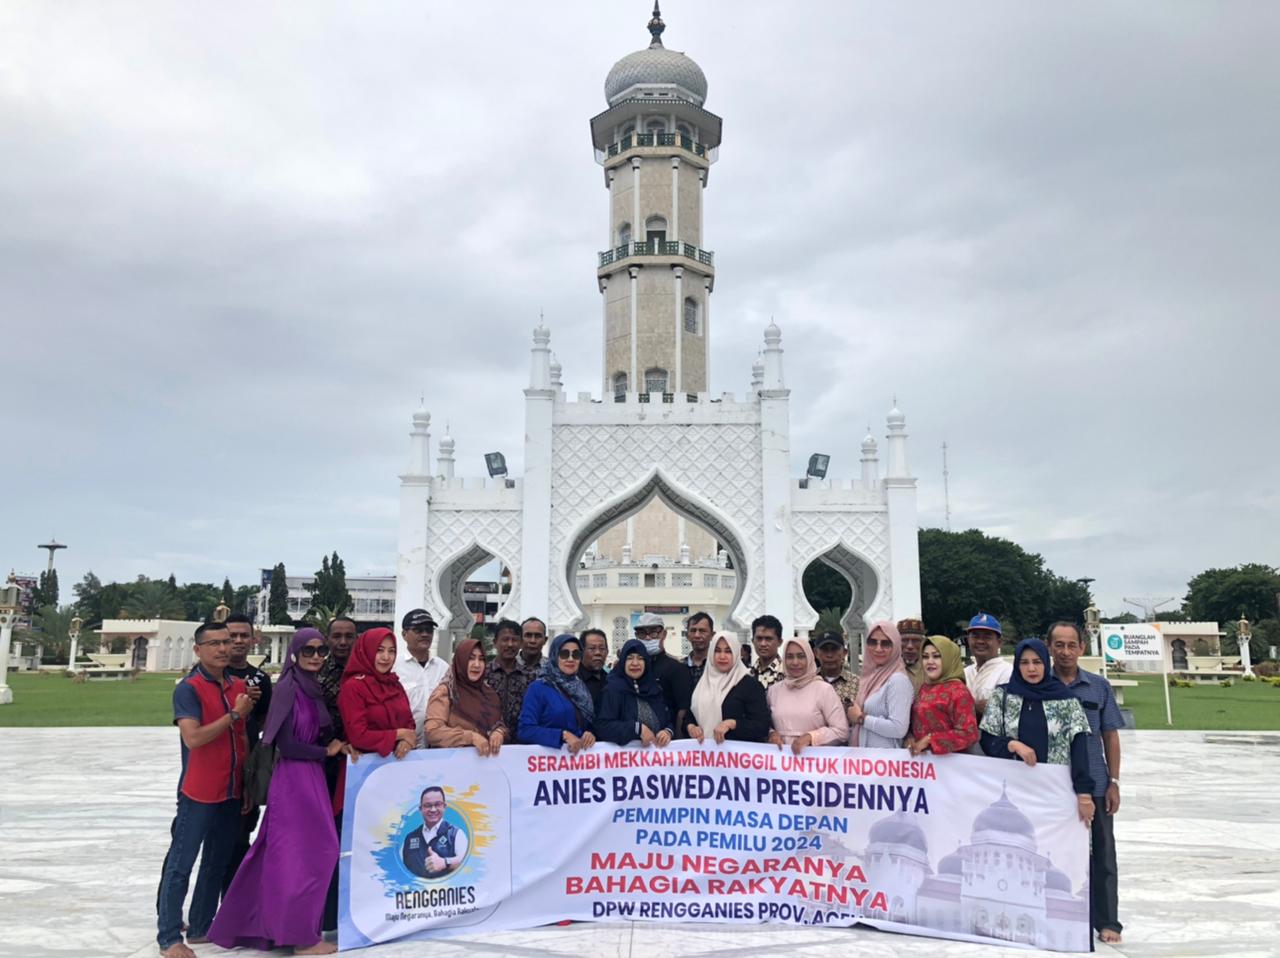 Euforia Memanggil Anies Untuk Indonesia, di Aceh Mulai Menyatakan Dukungan